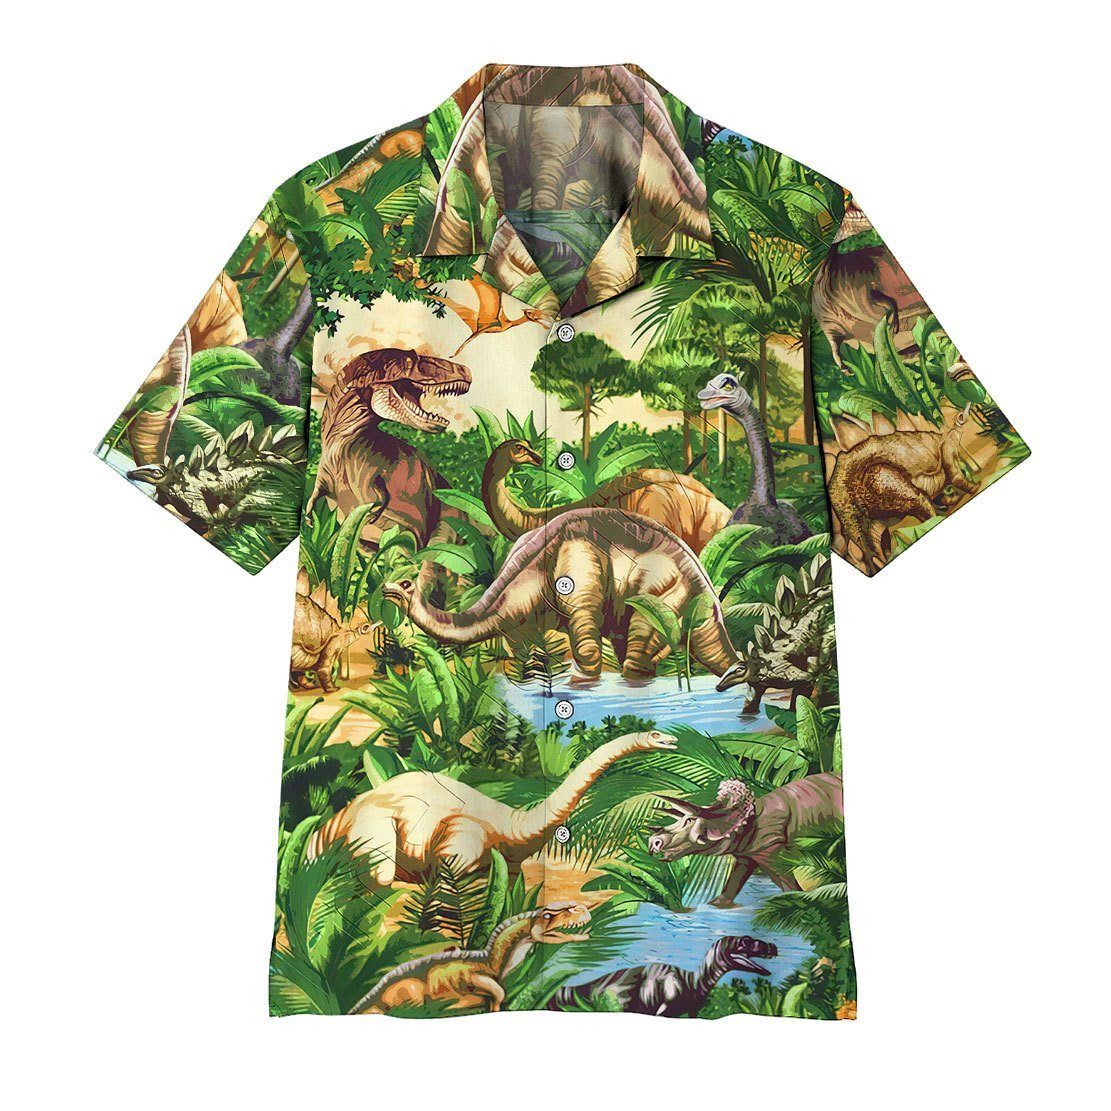 Gearhumans 3D Dinosaur Hawaii Shirt ZZ1905212 Hawai Shirt Hawaii Shirt S 